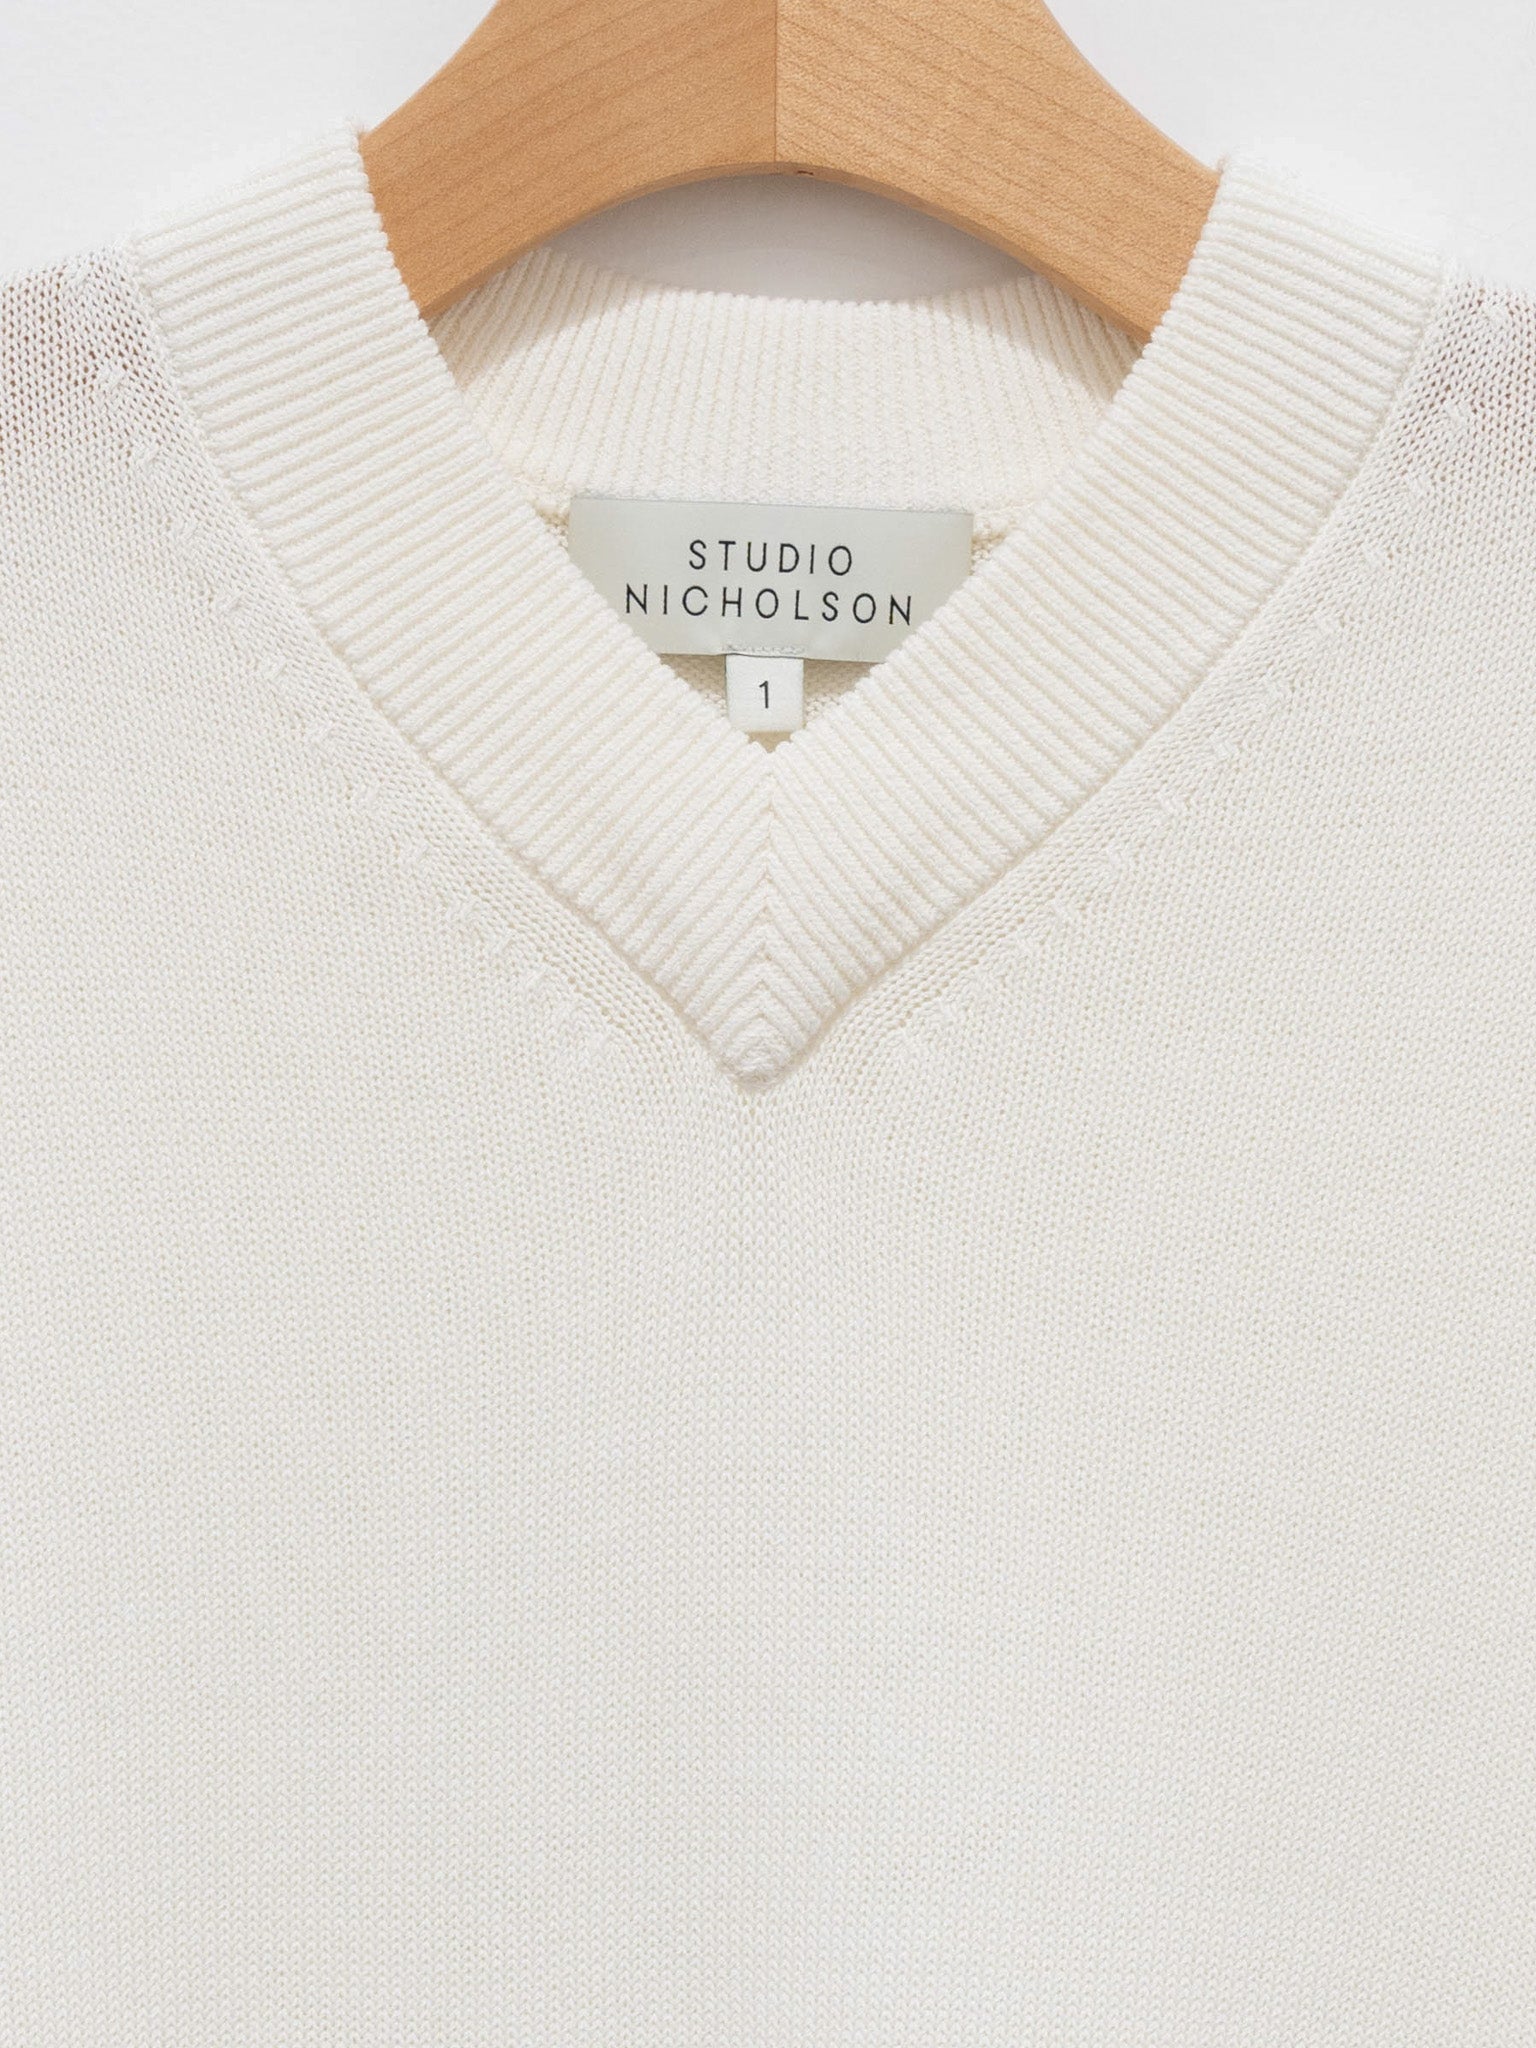 Namu Shop - Studio Nicholson Tula V-Neck Short Sleeve Knit - Ivory